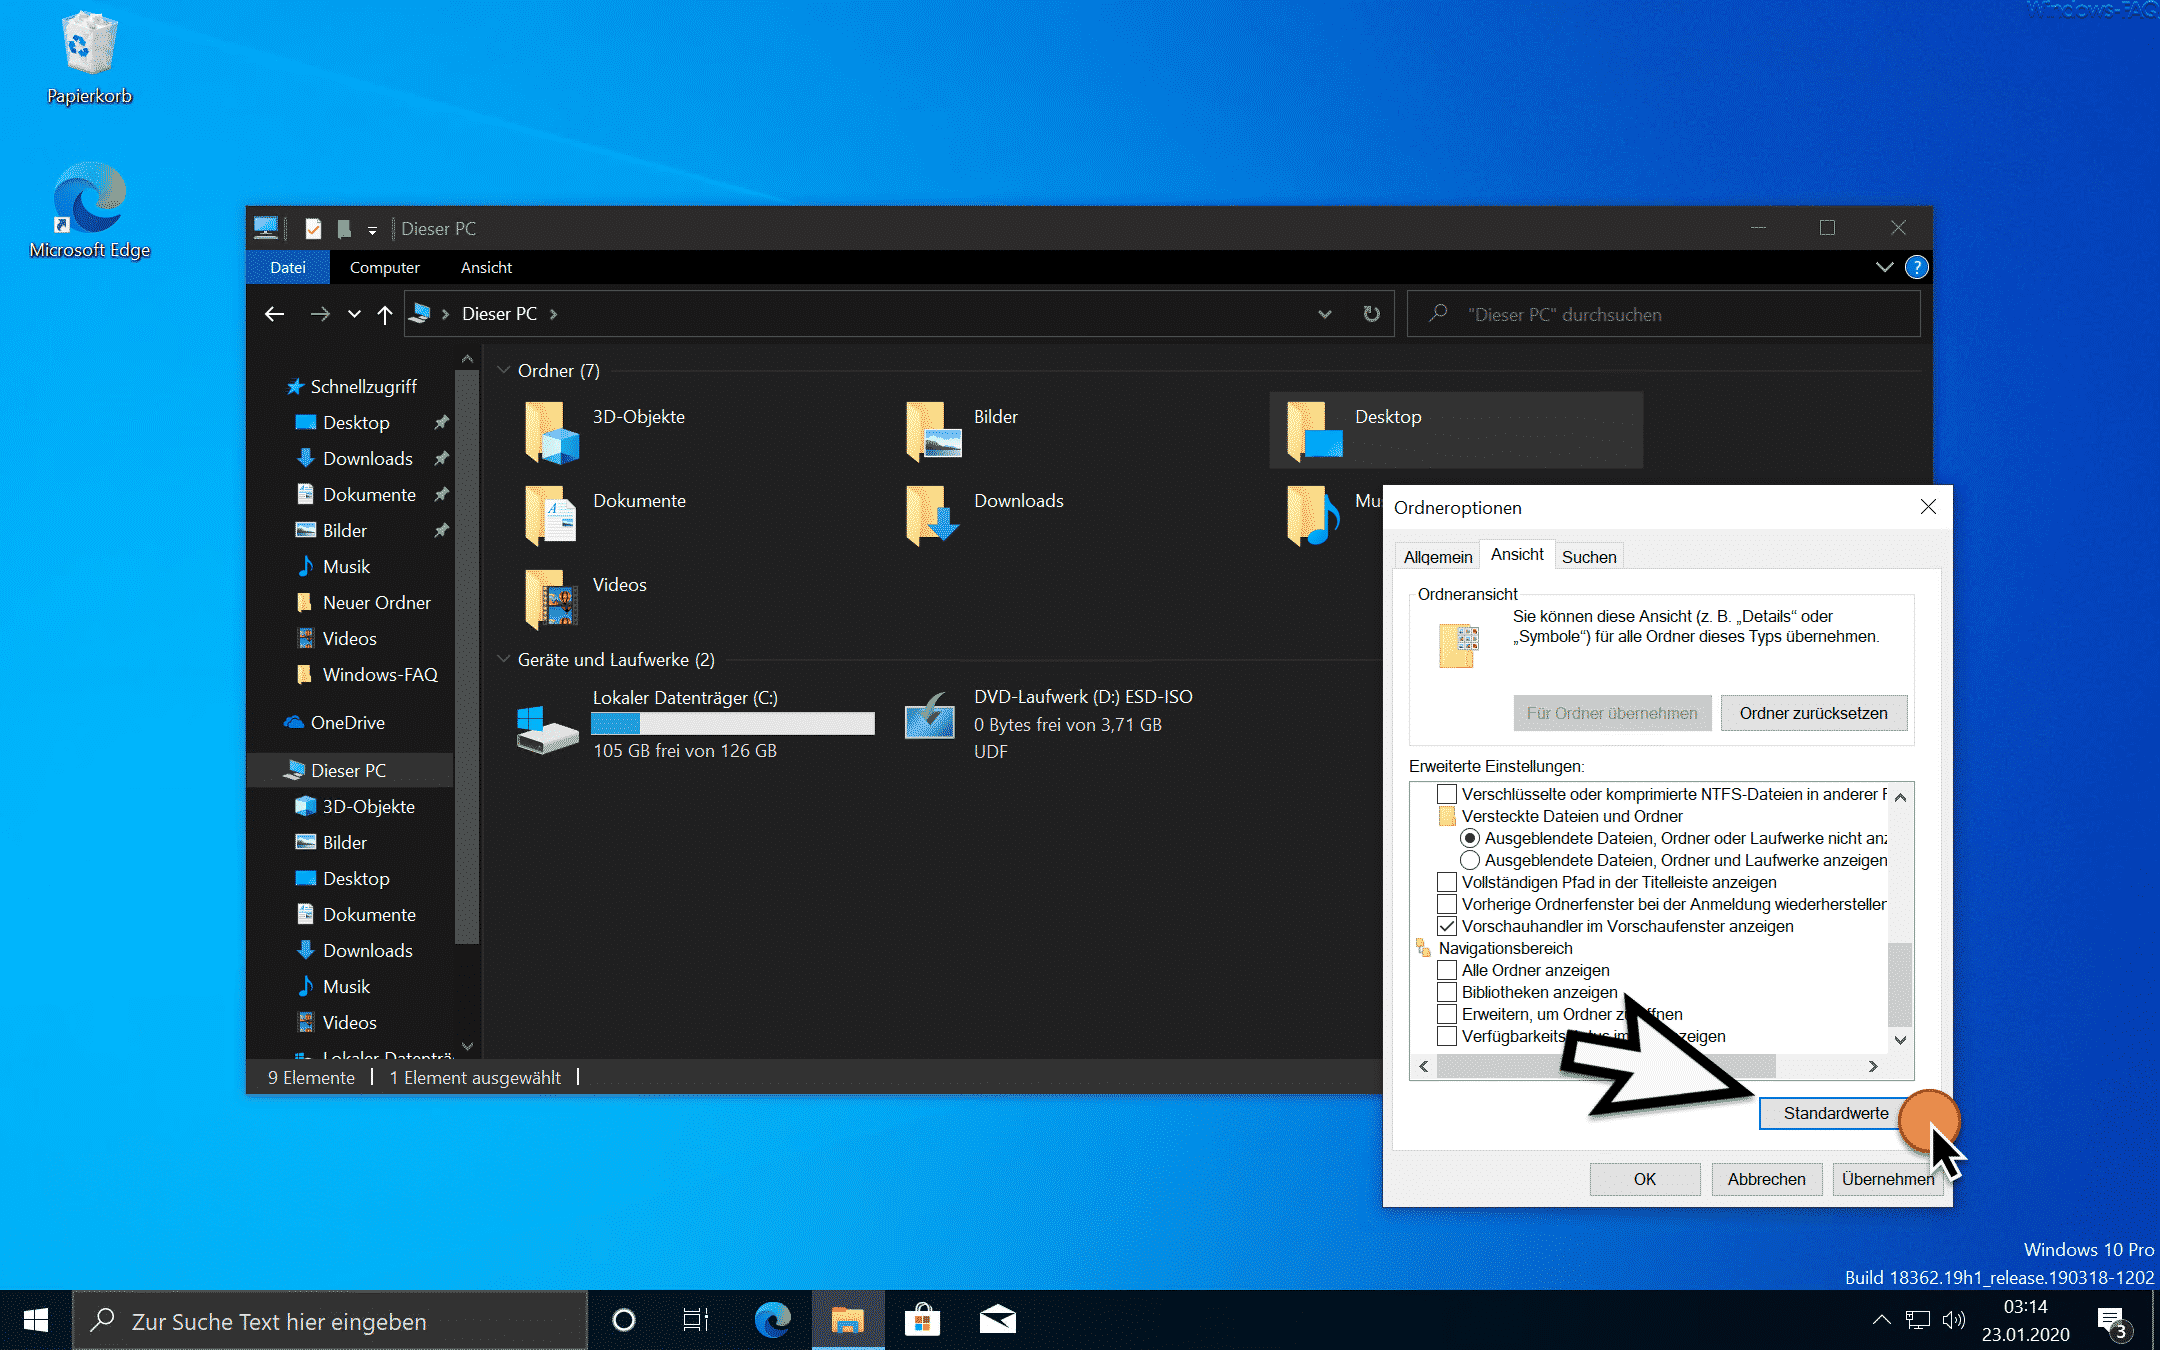 Windows Explorer auf Standardwerte zurücksetzen